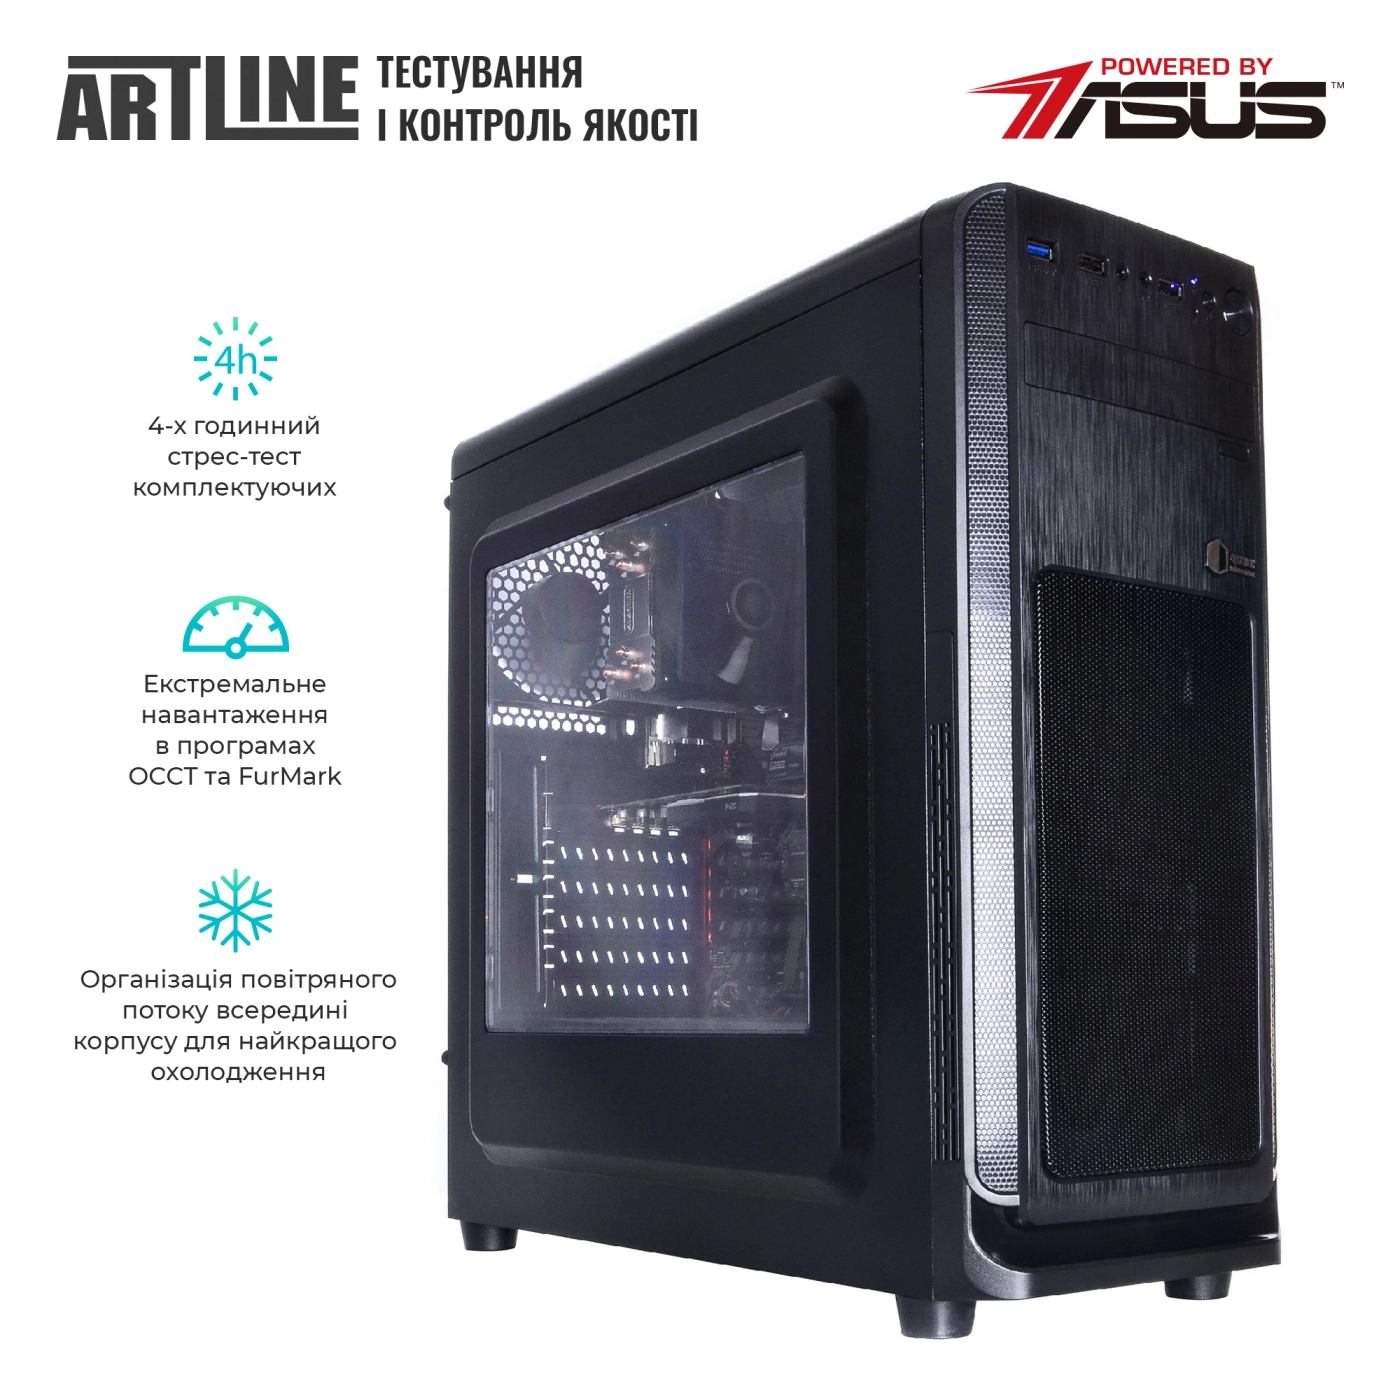 Купить Сервер ARTLINE Business T19v18 - фото 6